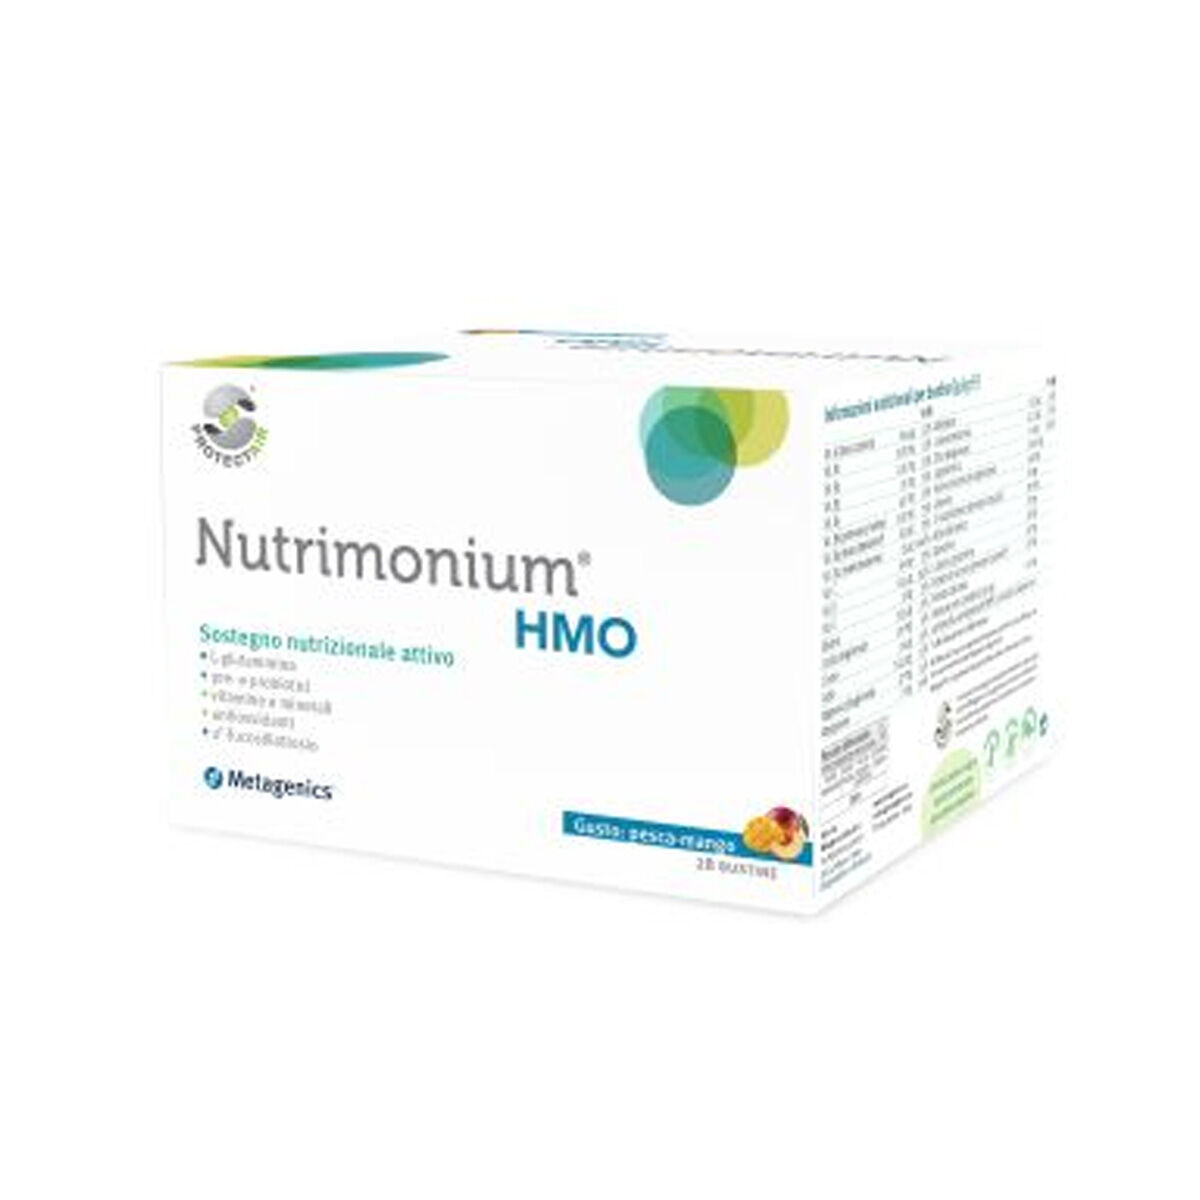 Metagenics Nutrimonium Hmo Integratore Multivitaminico 28 Bustine